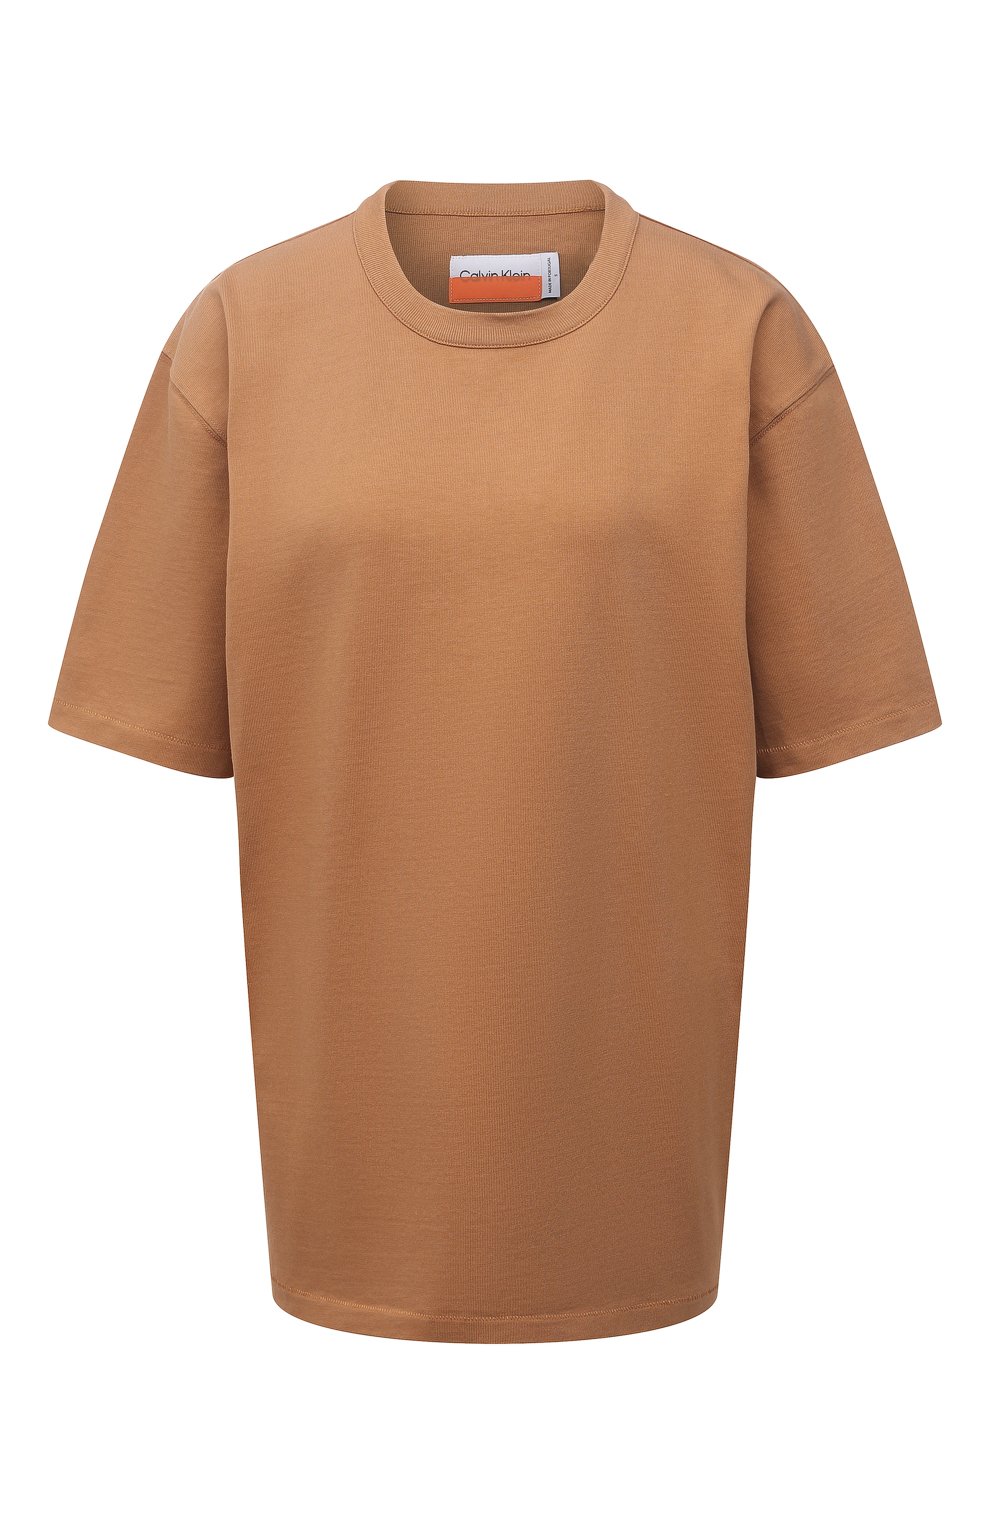 Женская хлопковая футболка HERON PRESTON FOR CALVIN KLEIN коричневого цвета, арт. K10K108252 | Фото 1 (Женское Кросс-КТ: Футболка-спорт, Футболка-одежда; Принт: Без принта; Рукава: Короткие; Длина (для топов): Стандартные; Материал внешний: Хлопок; Стили: Спорт-шик)